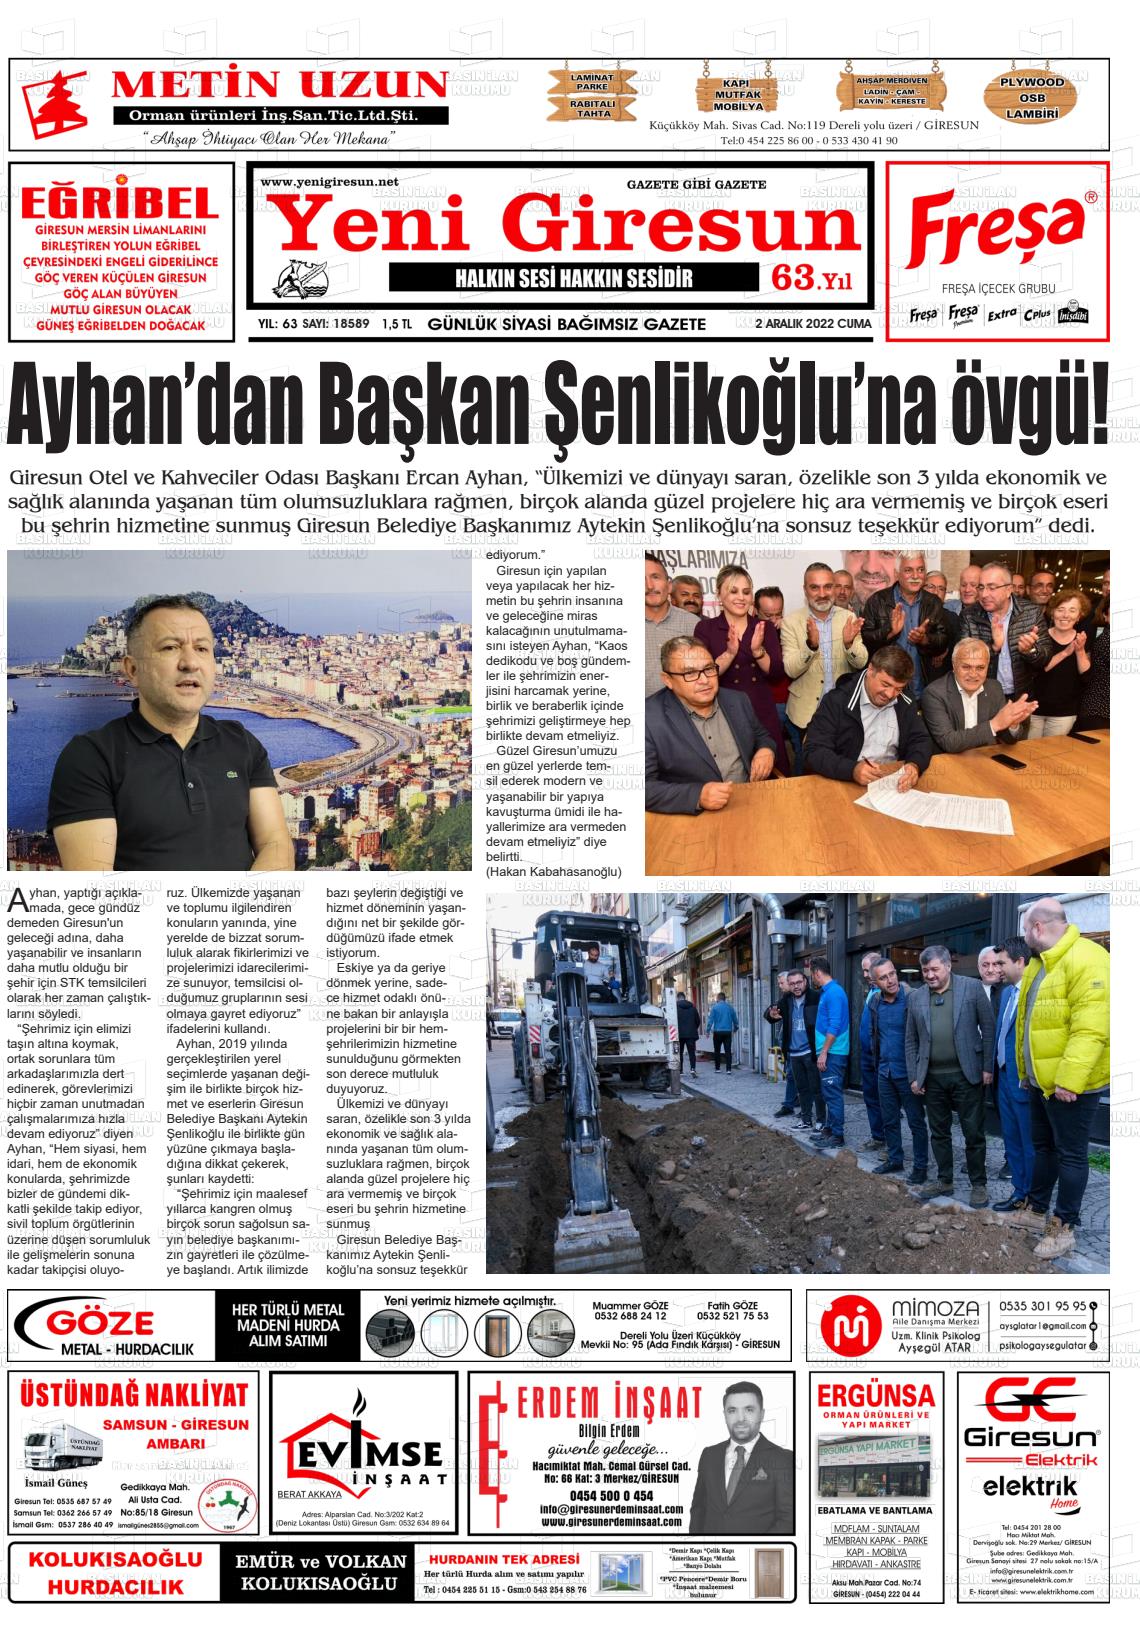 02 Aralık 2022 Yeni Giresun Gazete Manşeti